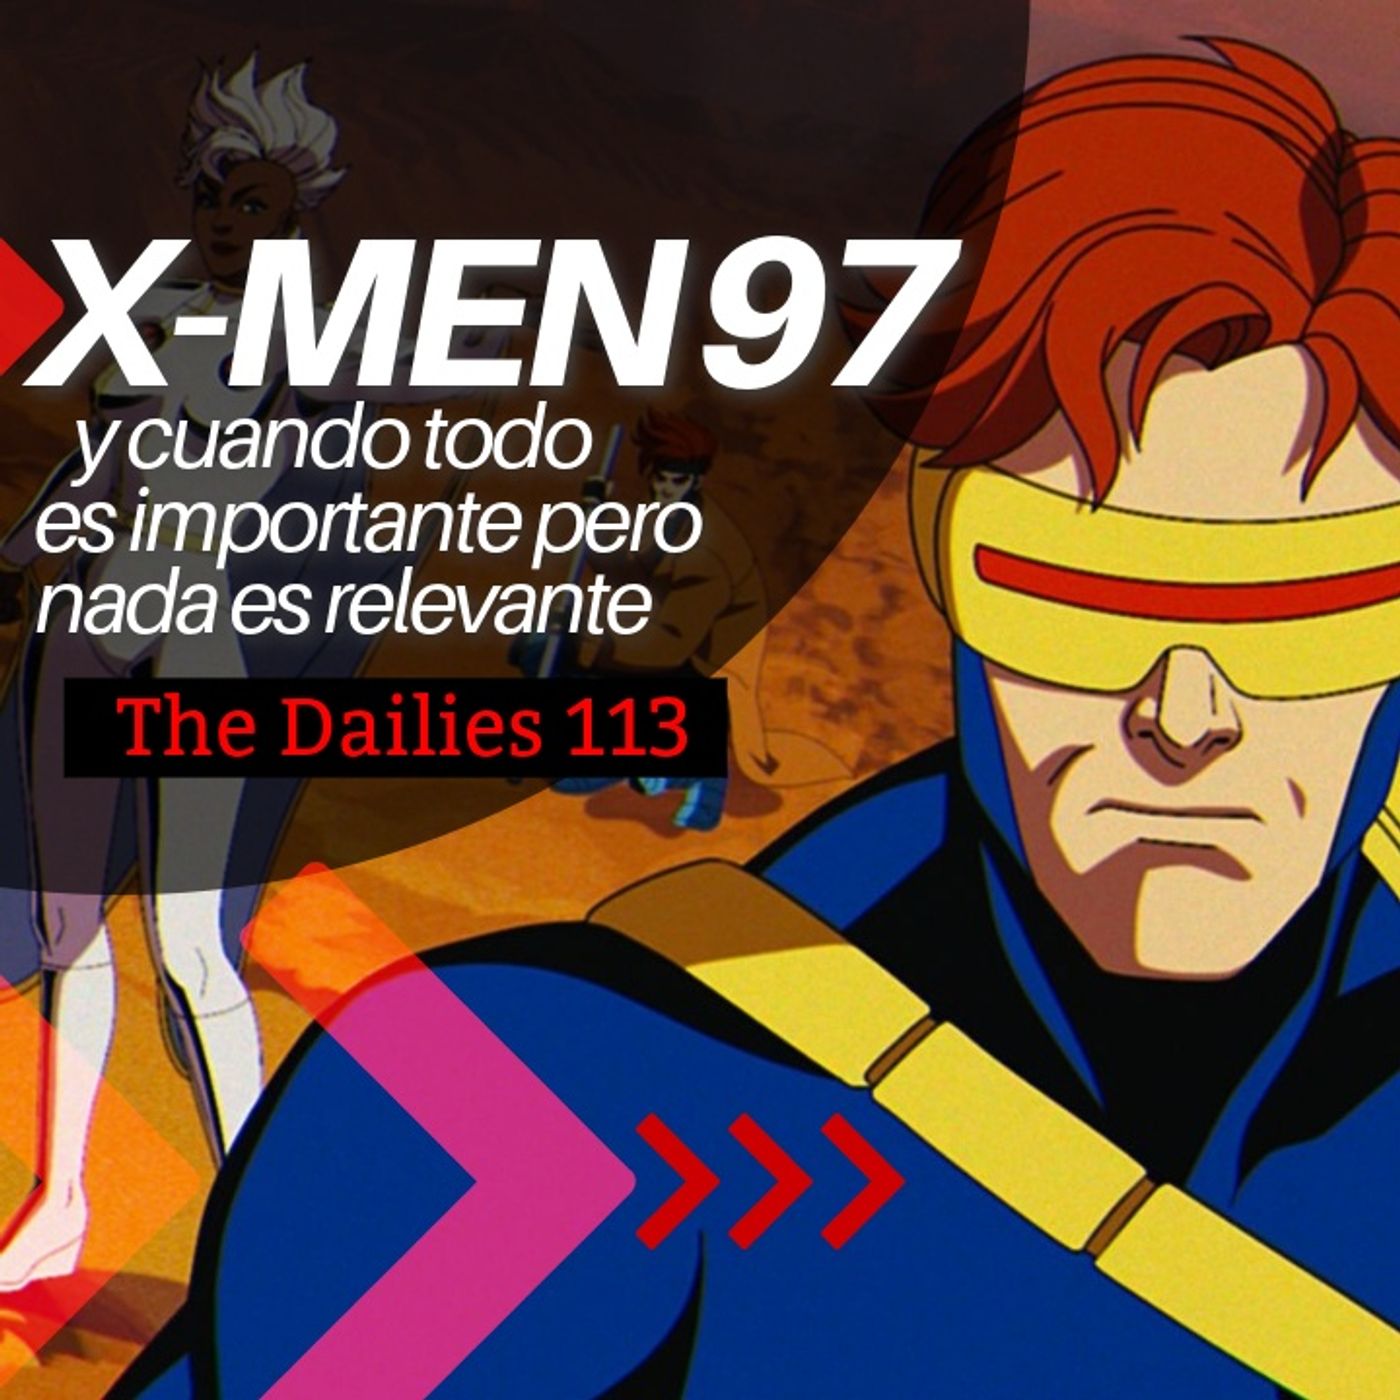 X-Men 97 y cuando todo es importante, nada es relevante - The Dailies 113